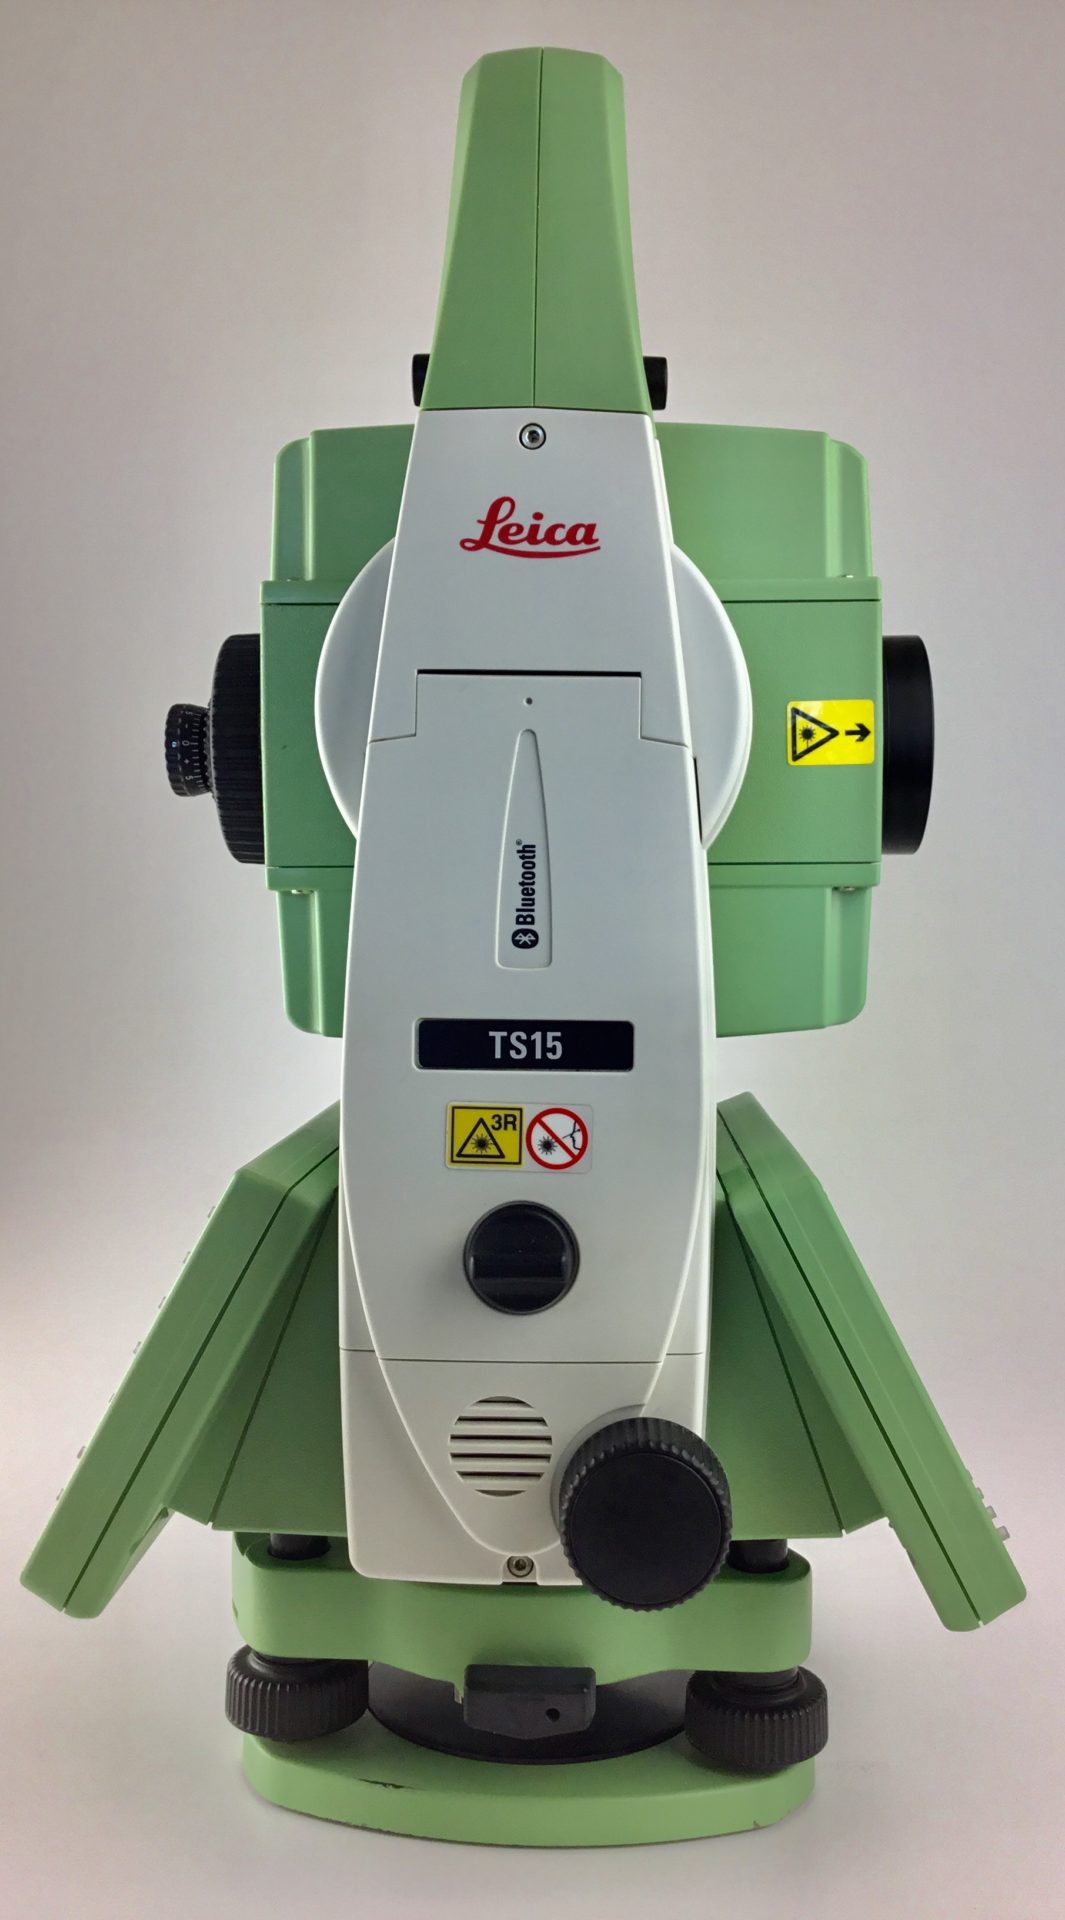 Leica TS15 1" R30